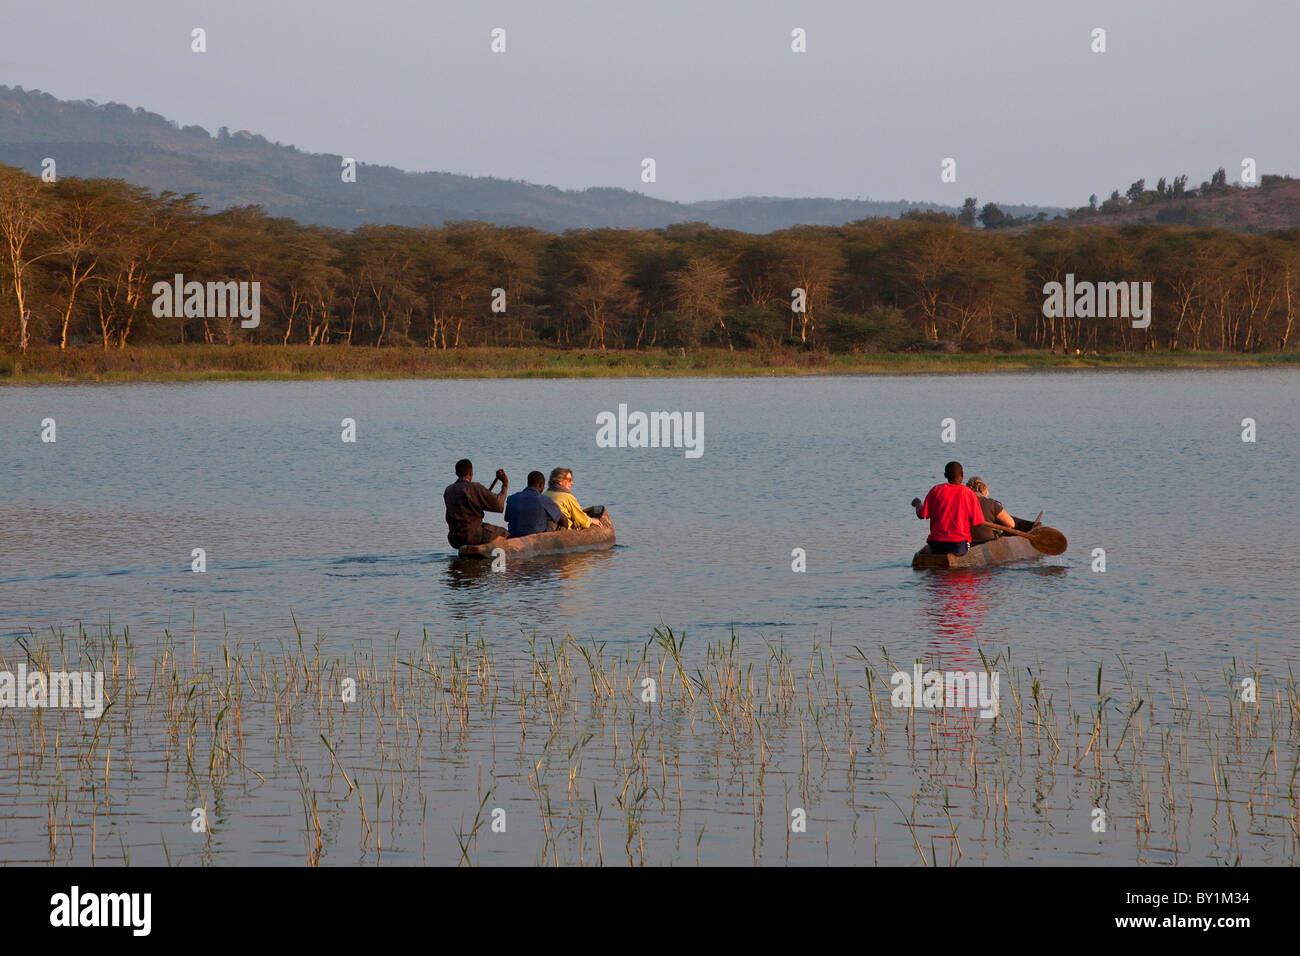 Nel tardo pomeriggio, i visitatori al Lago Babati sono presi in piroga canoe per visualizzare gli ippopotami e uccelli acquatici. Foto Stock